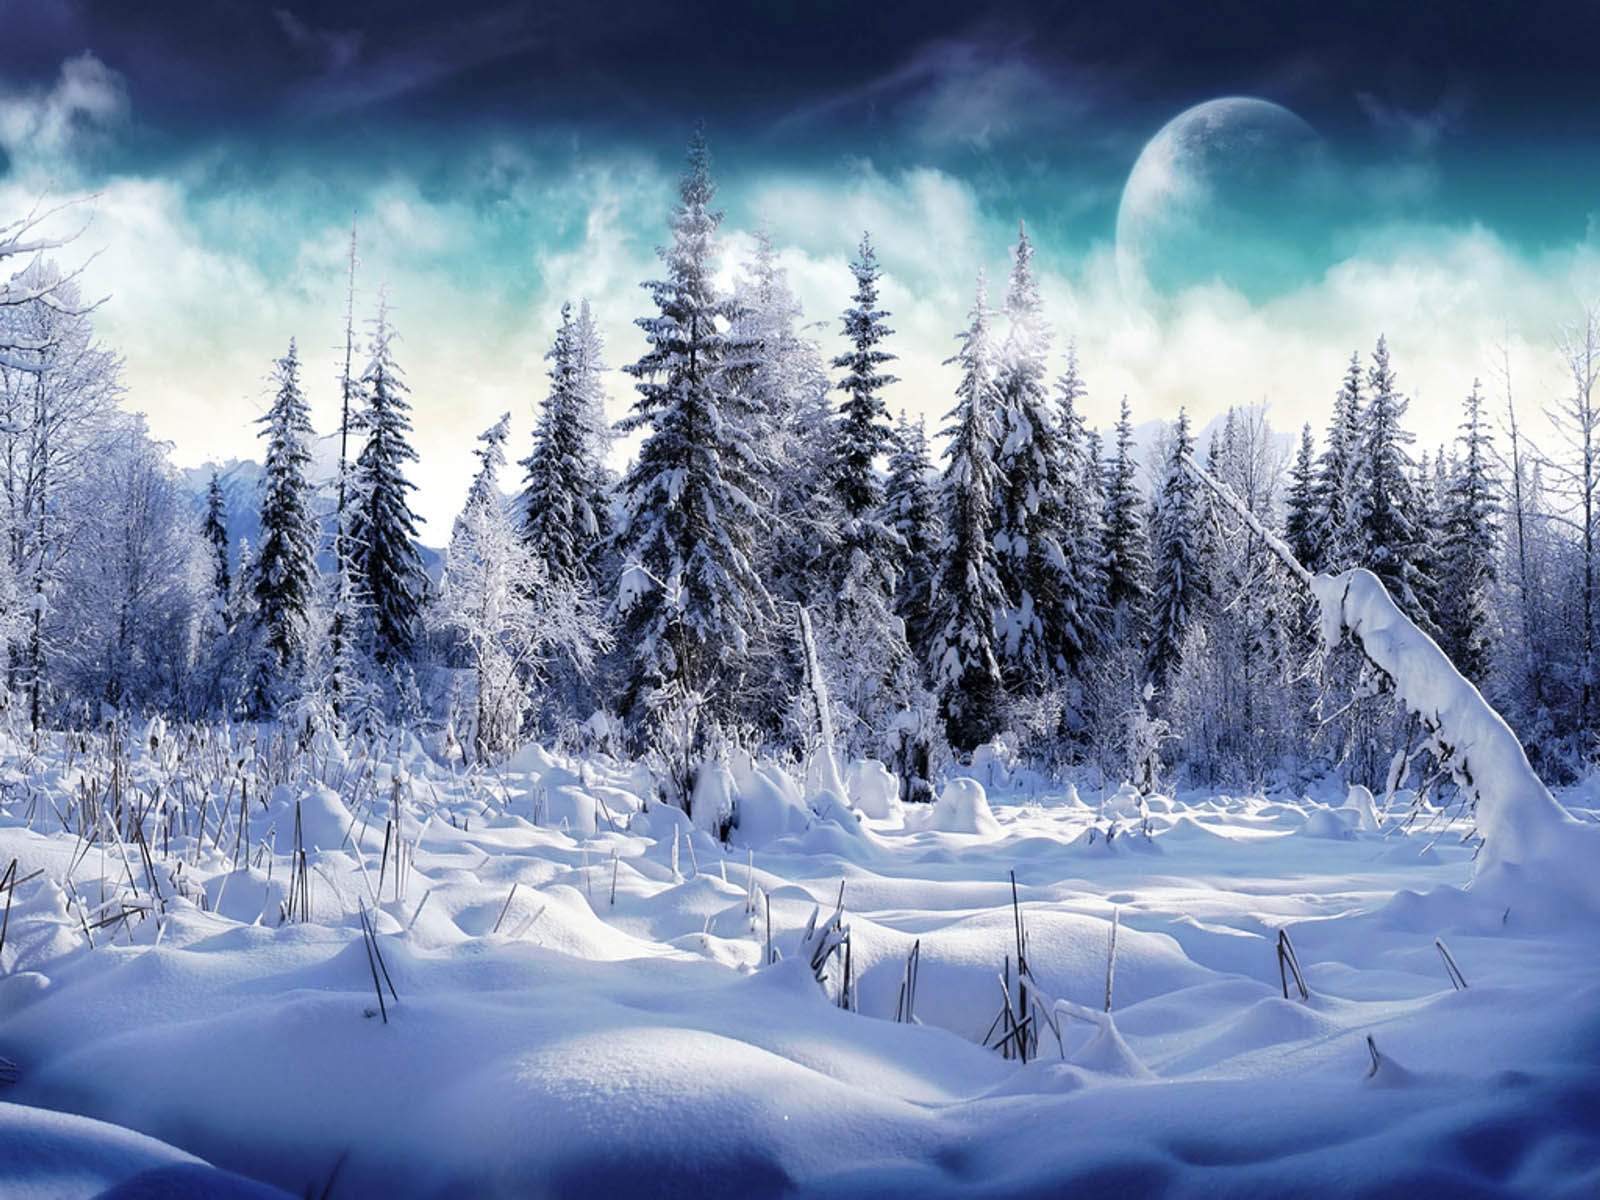 the Snow Wallpapers Snow DesktopWallpapers Snow Desktop Backgrounds